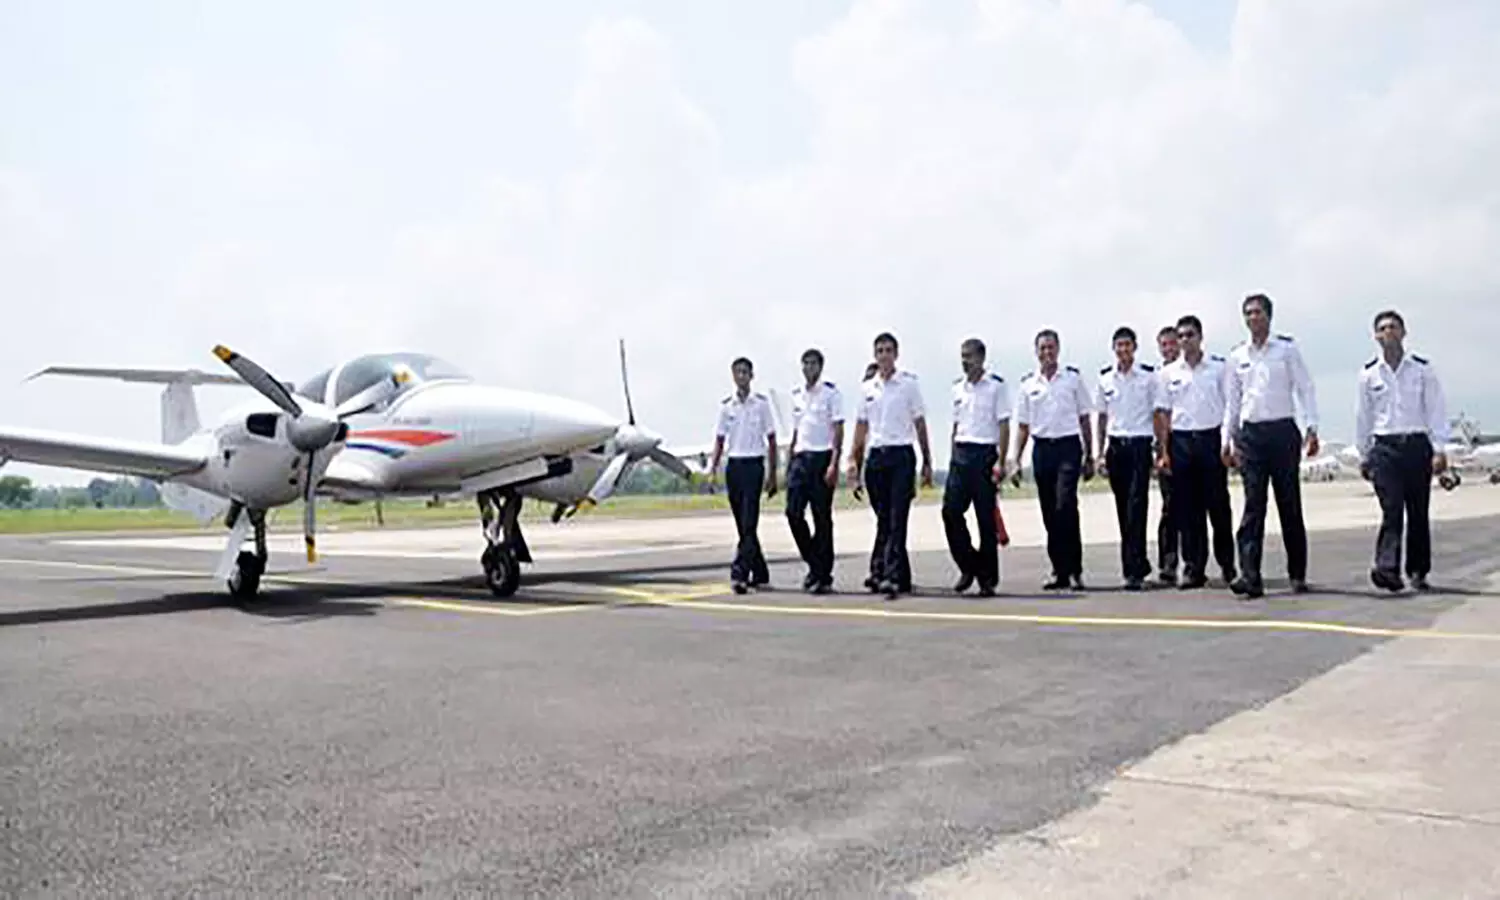 IGRU Pilot Recruitment2023: इंदिरा गांधी राष्ट्रीय उड़ान एकेडमी में पायलट के 125 सीटों पर भर्ती, कब तक कर सकेंगे अप्लाई जान लें